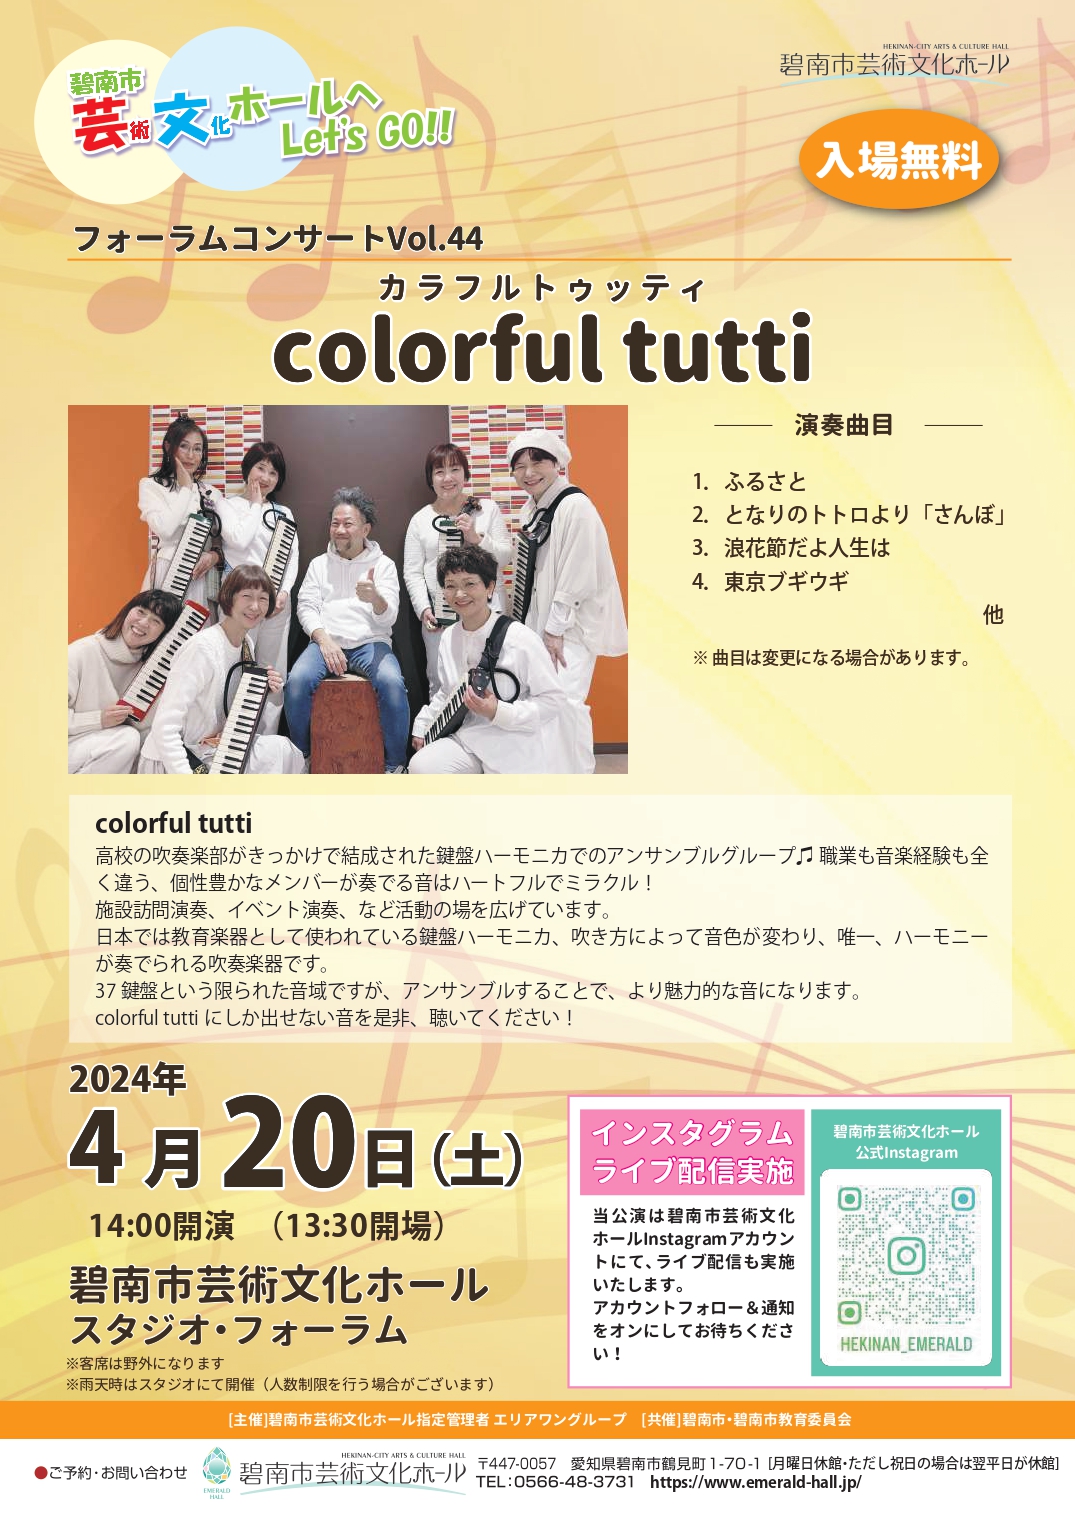 フォーラムコンサート Vol.44 colorful tutti